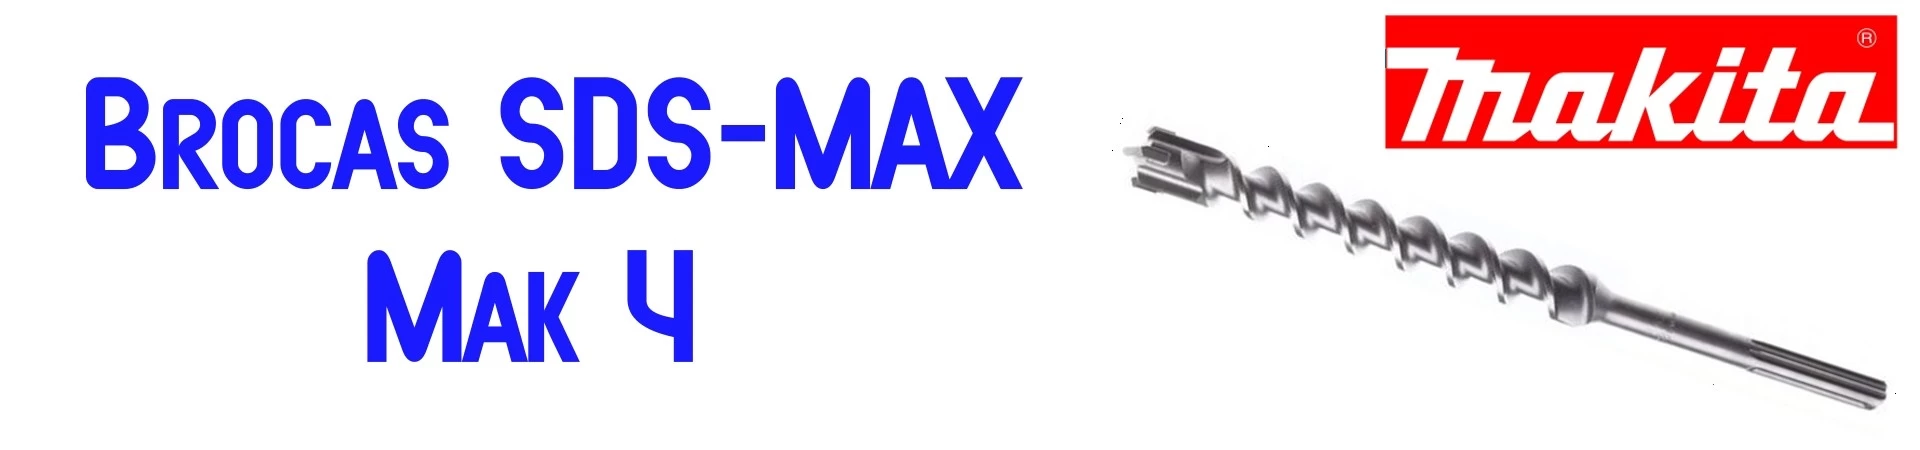 Brocas SDS-MAX Mak 4